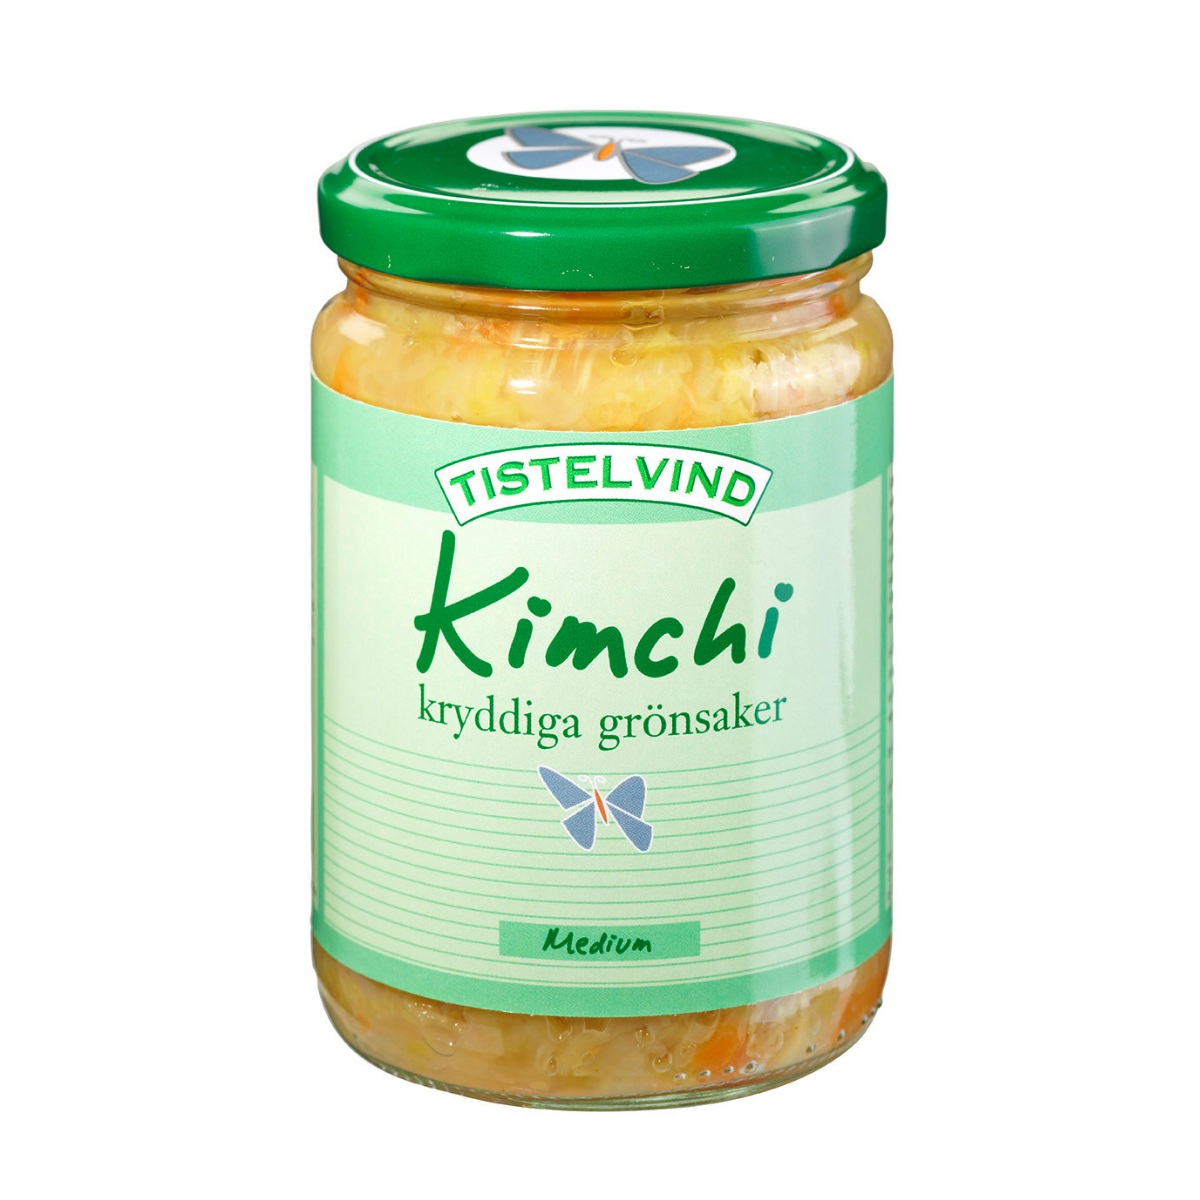 Tistelvind's Kimchi medium '